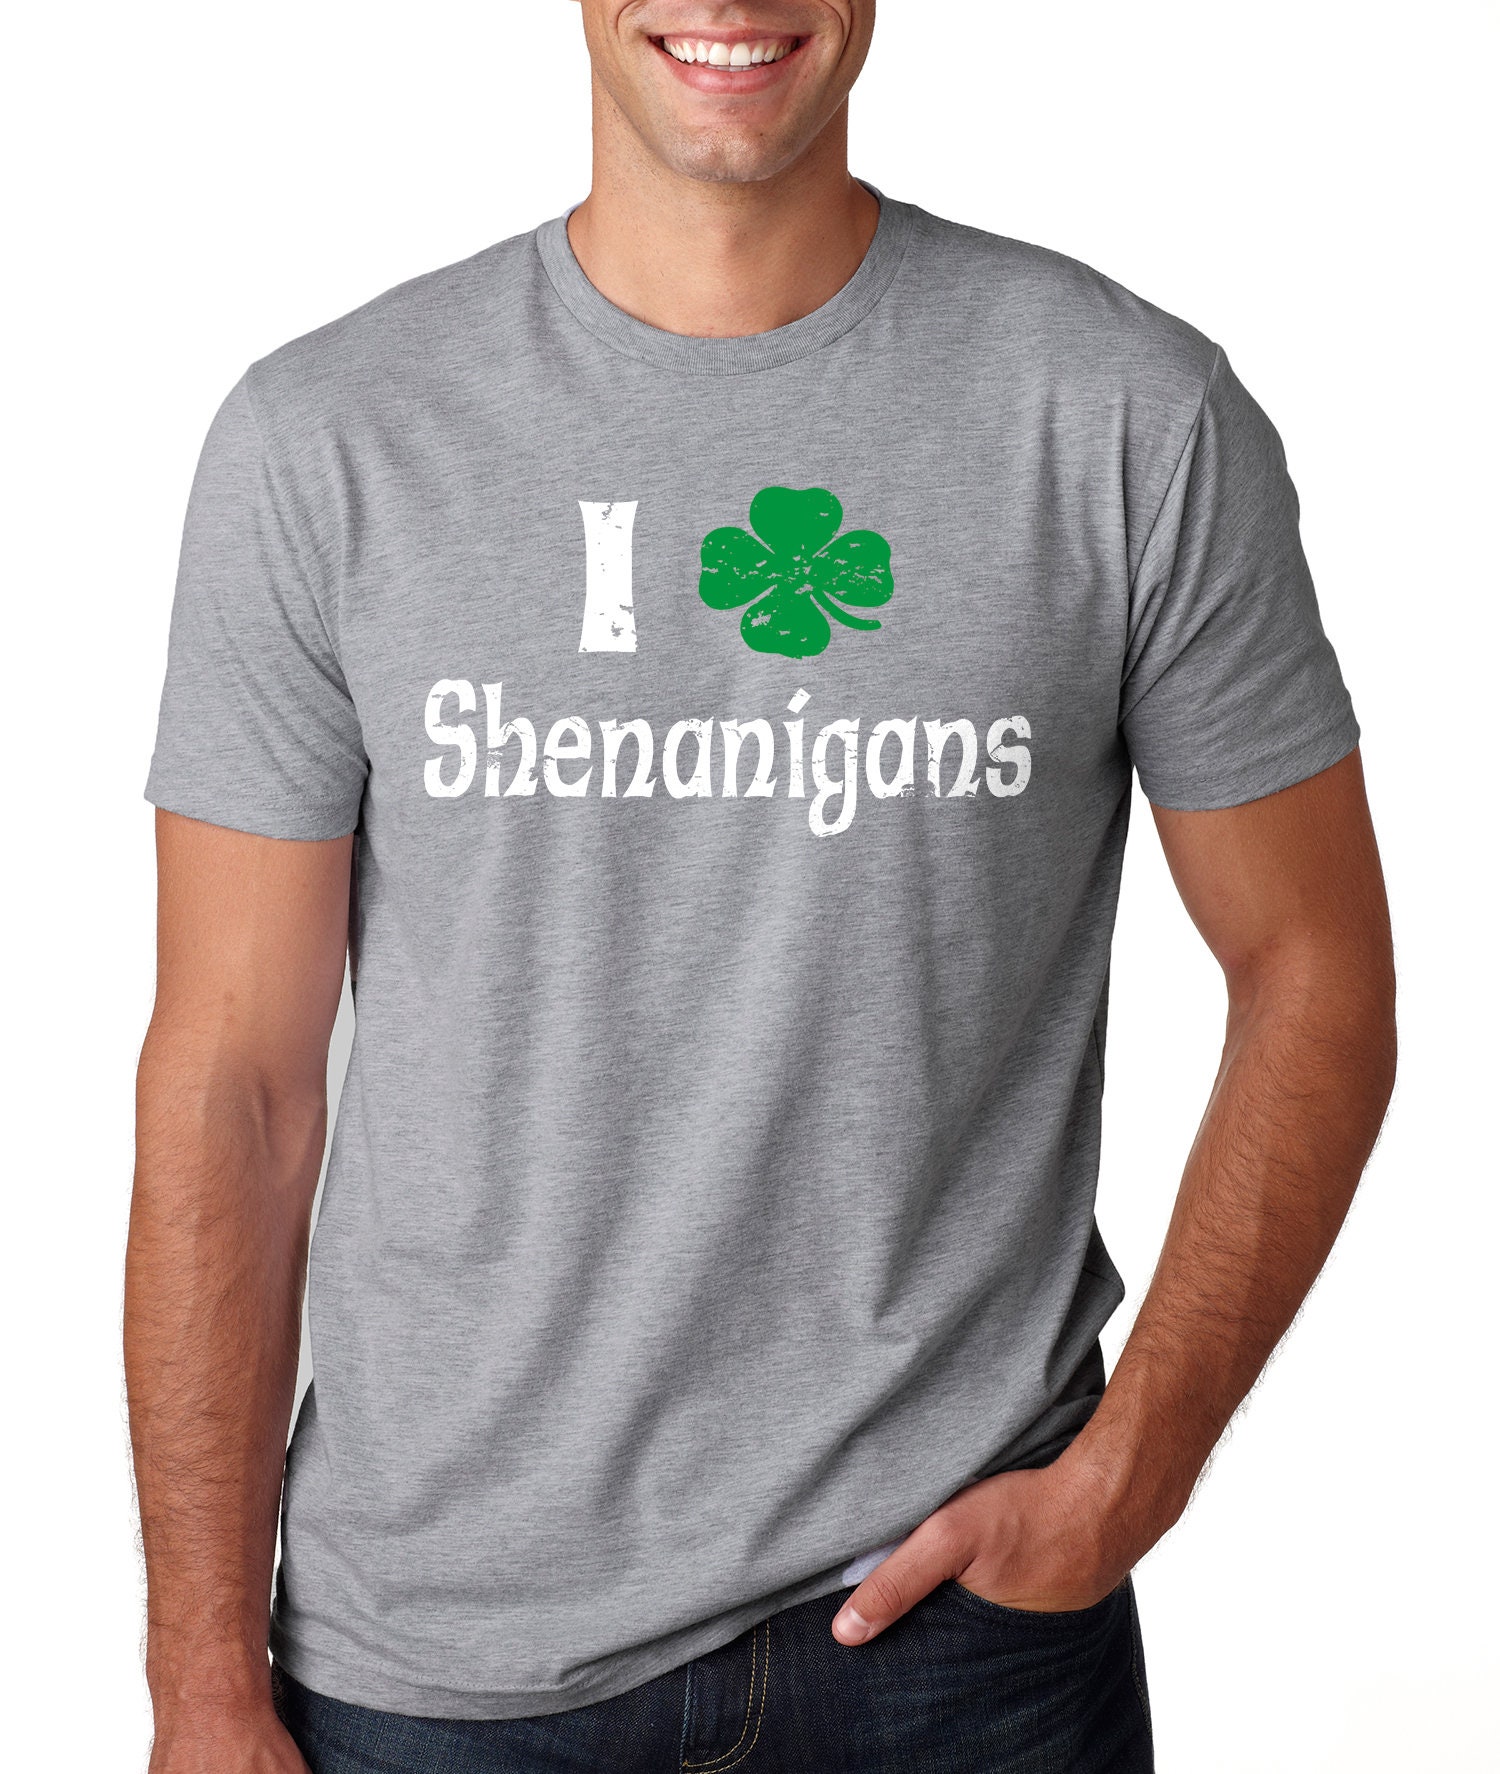 Shenanigans T-shirt Funny St Patrick's Day Irish Pub - Etsy